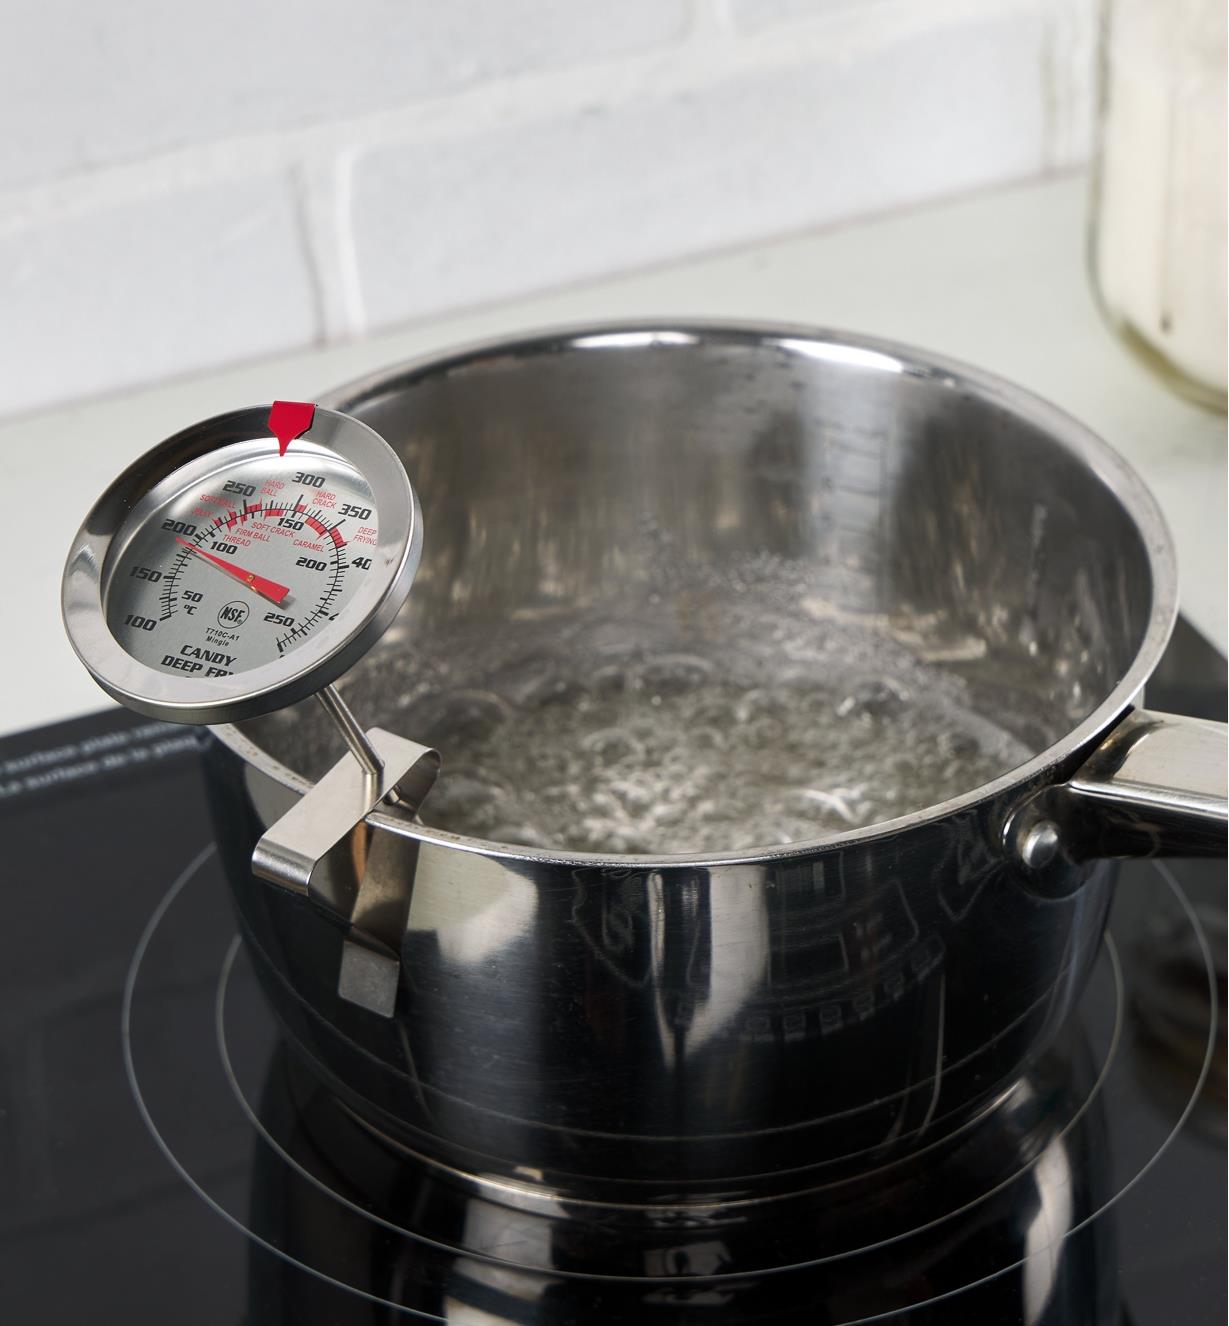 Thermomètre pour friture et confiserie accroché à une casserole posée sur une cuisinière